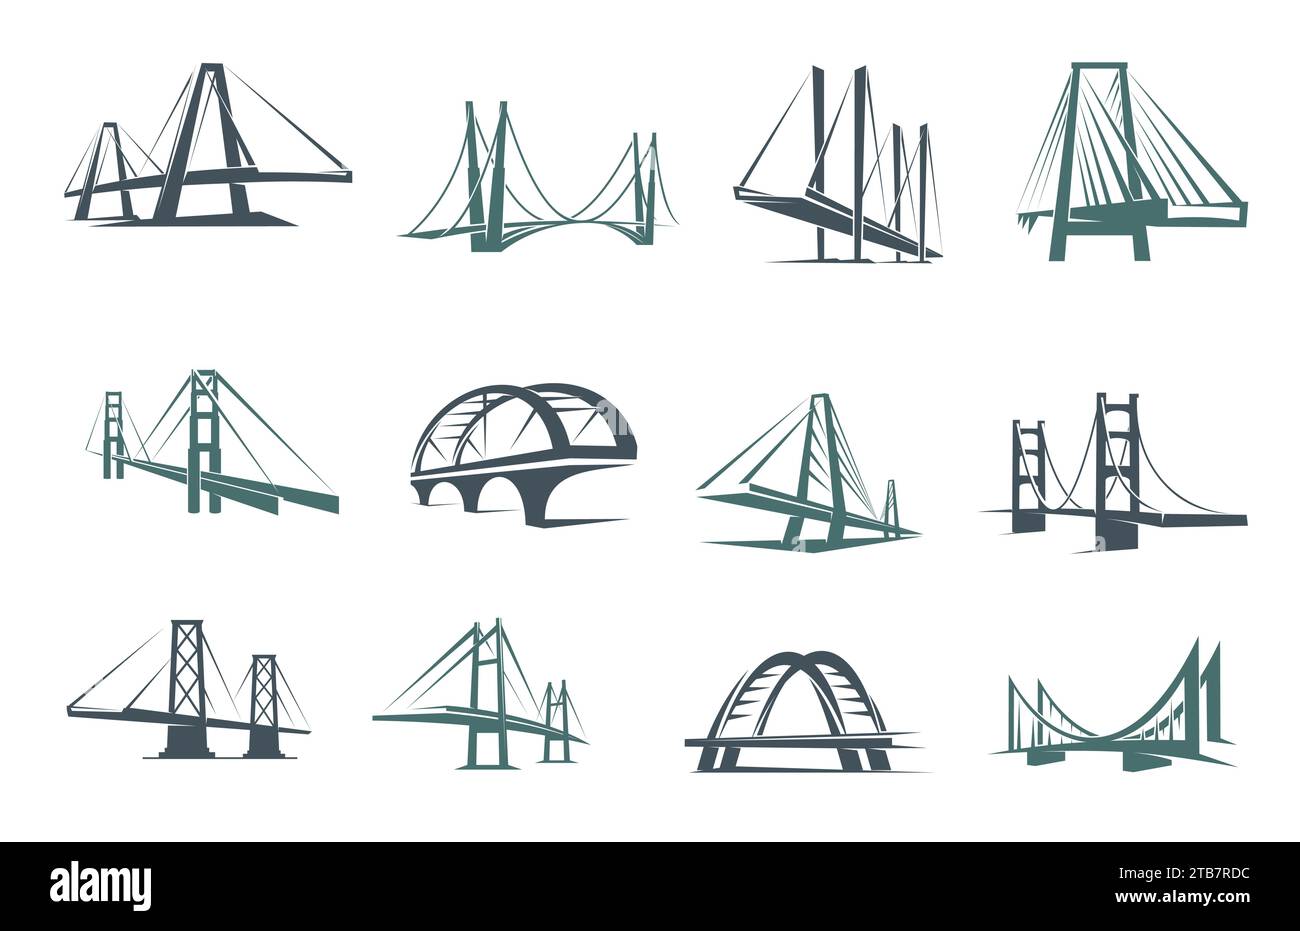 Brückensymbole, Bau-, Gebäude- und Architekturvektorsymbole. Schilder von Unternehmen und Technologieunternehmen mit Brücken oder Tortürmen mit Bögen, Verbindungen und Verkehrssymbolen Stock Vektor